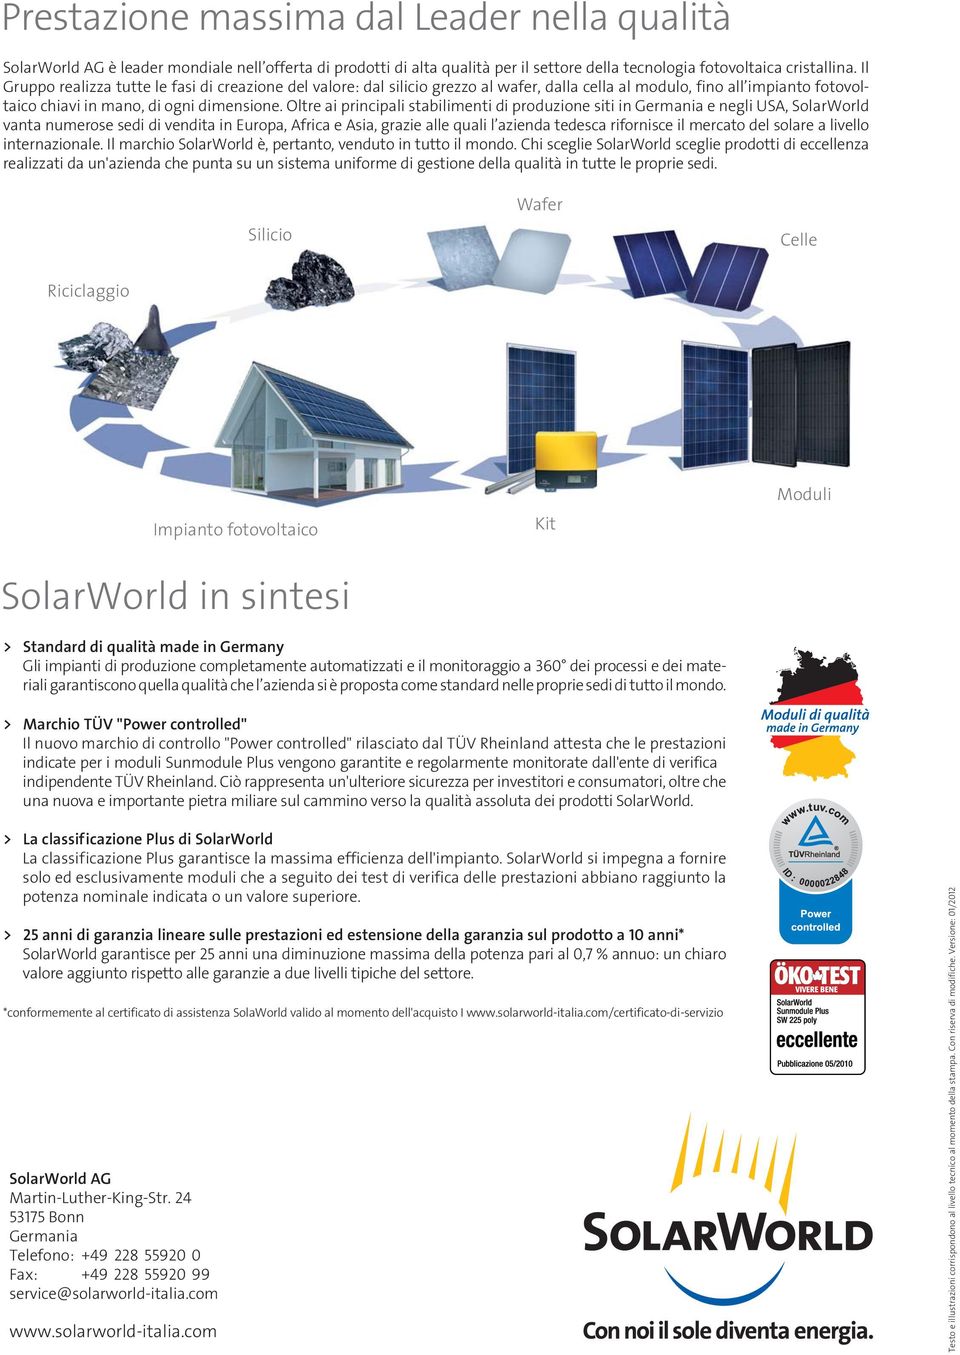 Oltre ai principali stabilimenti di produzione siti in Germania e negli USA, SolarWorld vanta numerose sedi di vendita in Europa, Africa e Asia, grazie alle quali l azienda tedesca rifornisce il